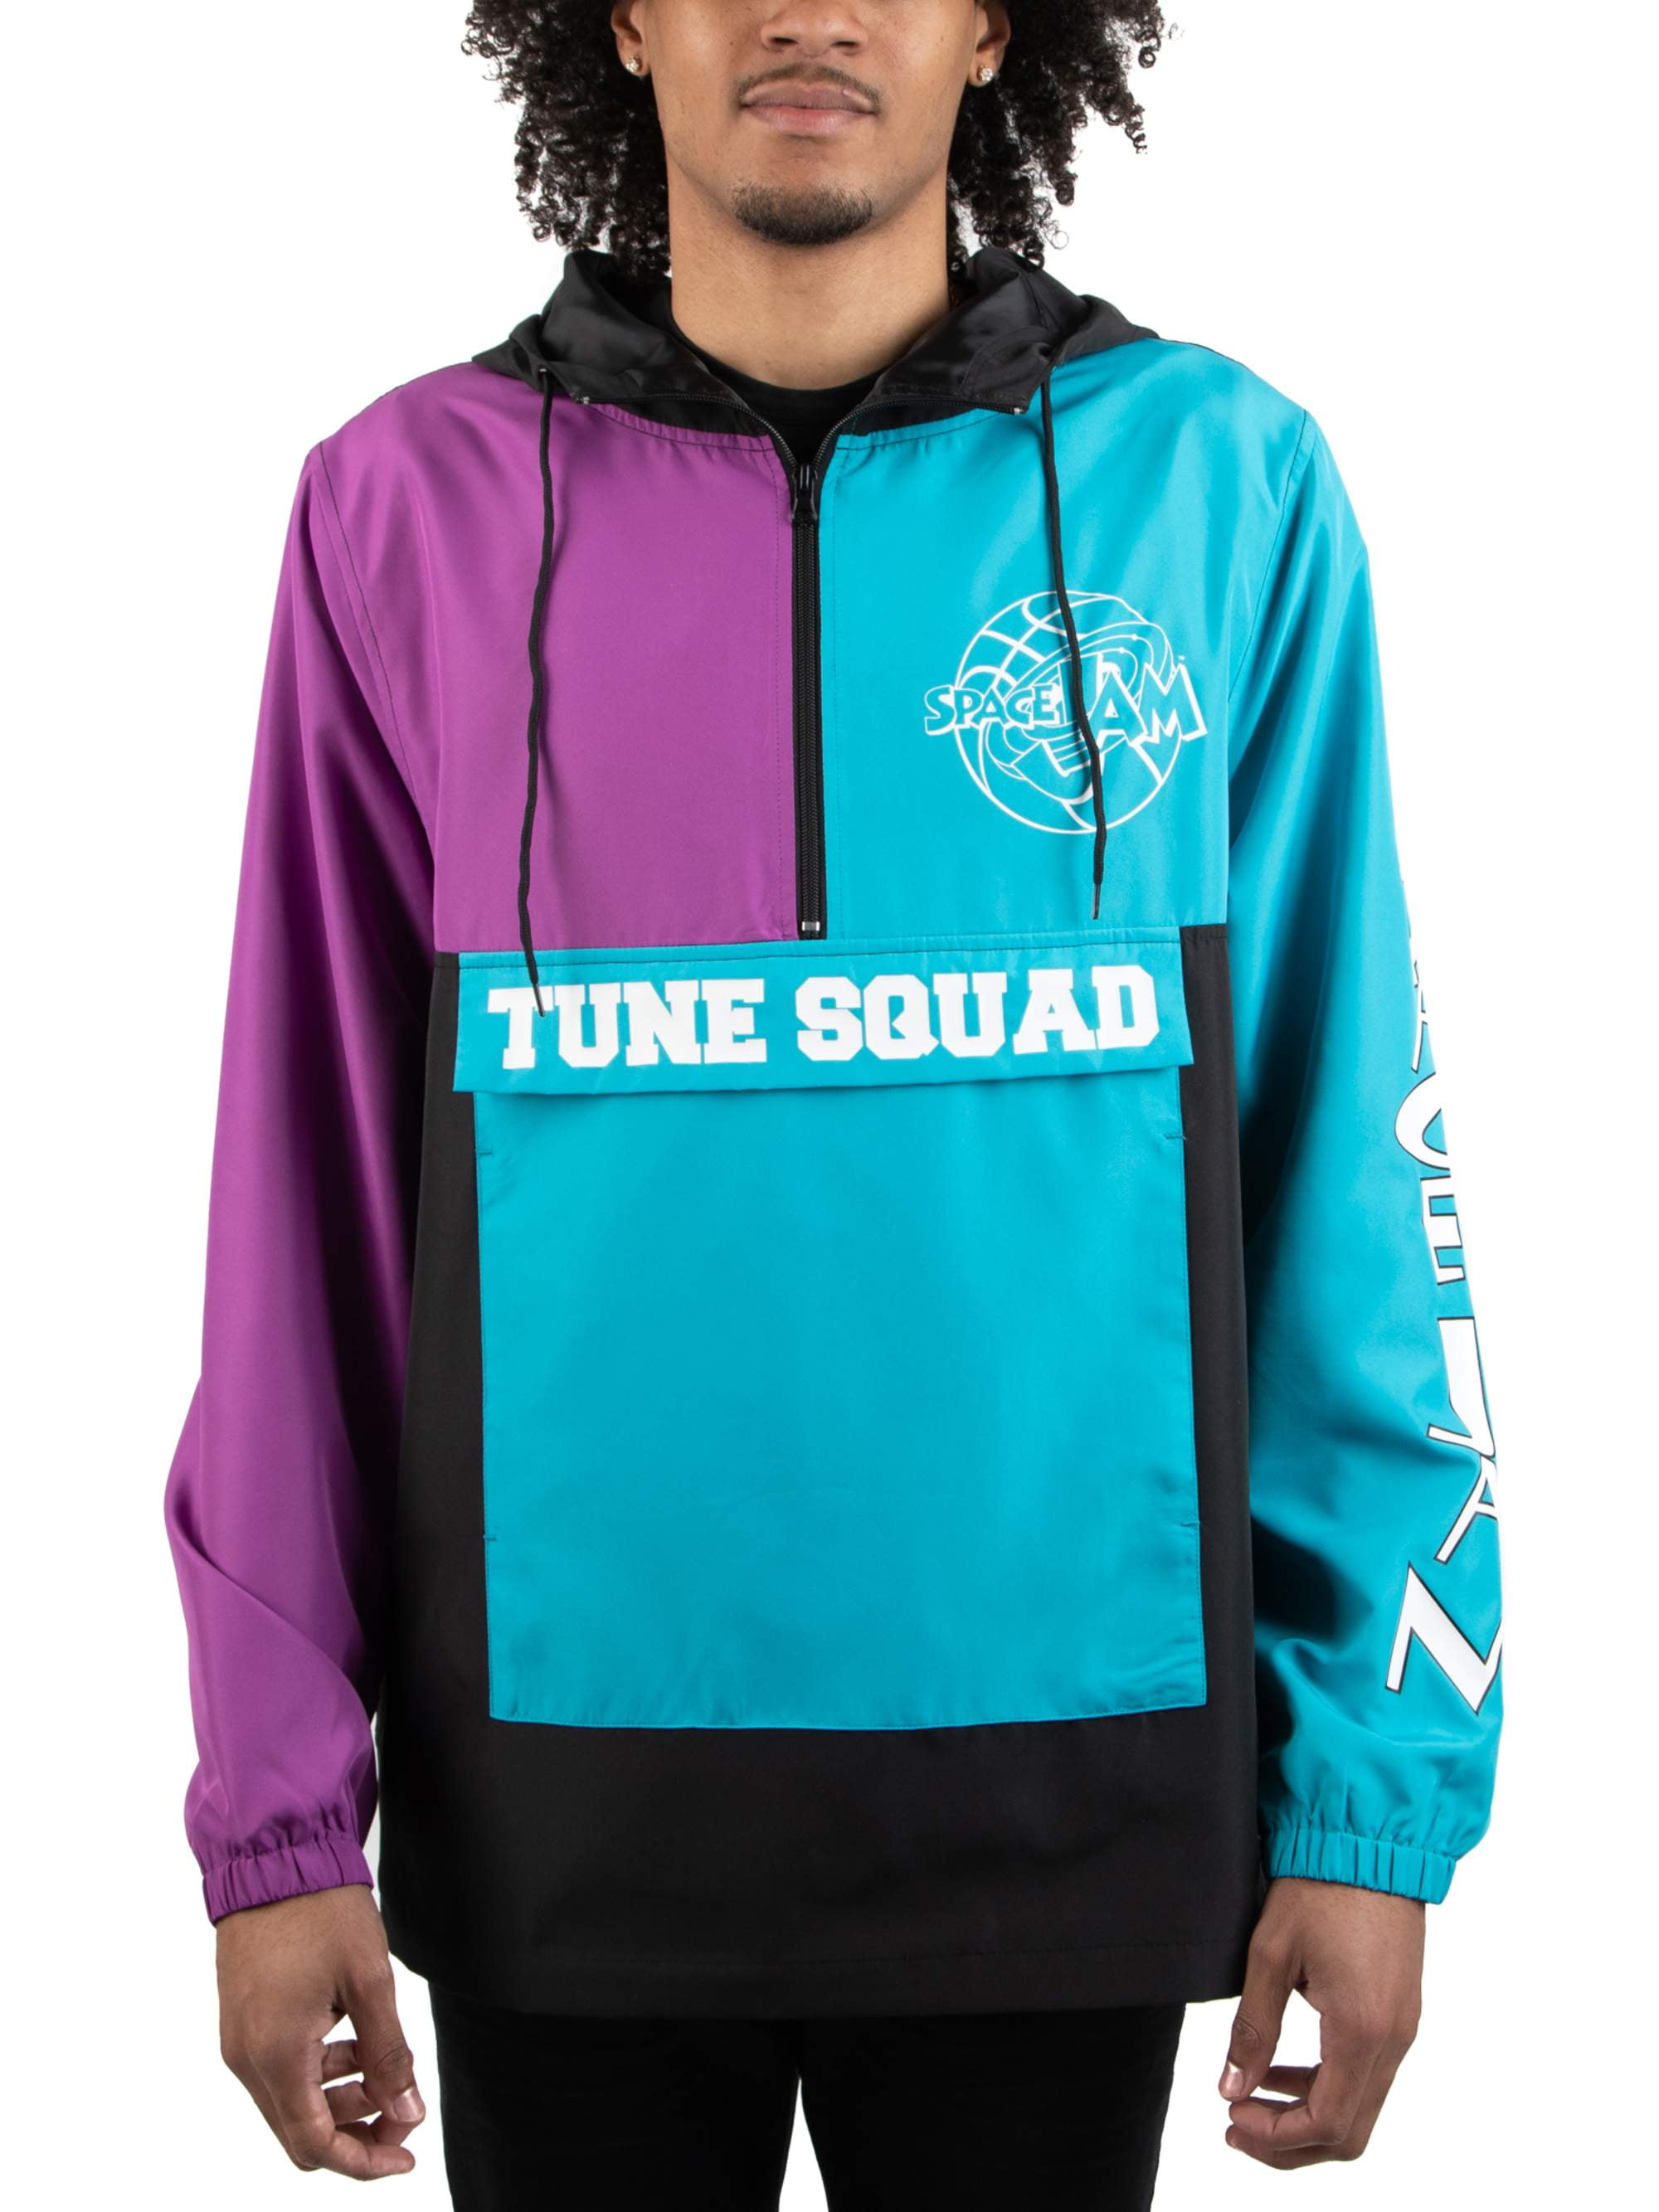 tune squad jacket